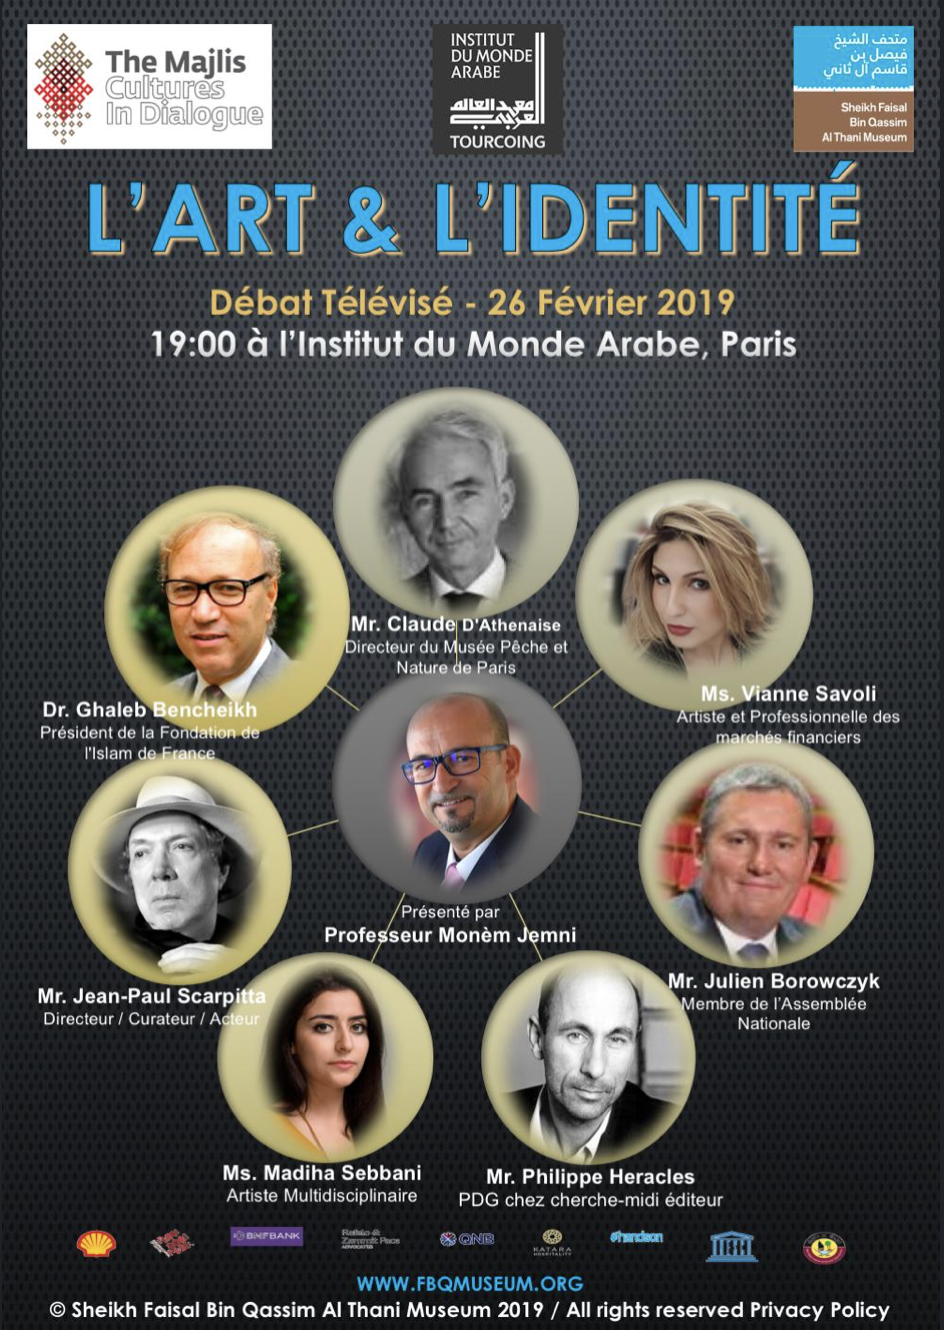 Interview / Artist Talk round table At Institute du Monde Arabe 